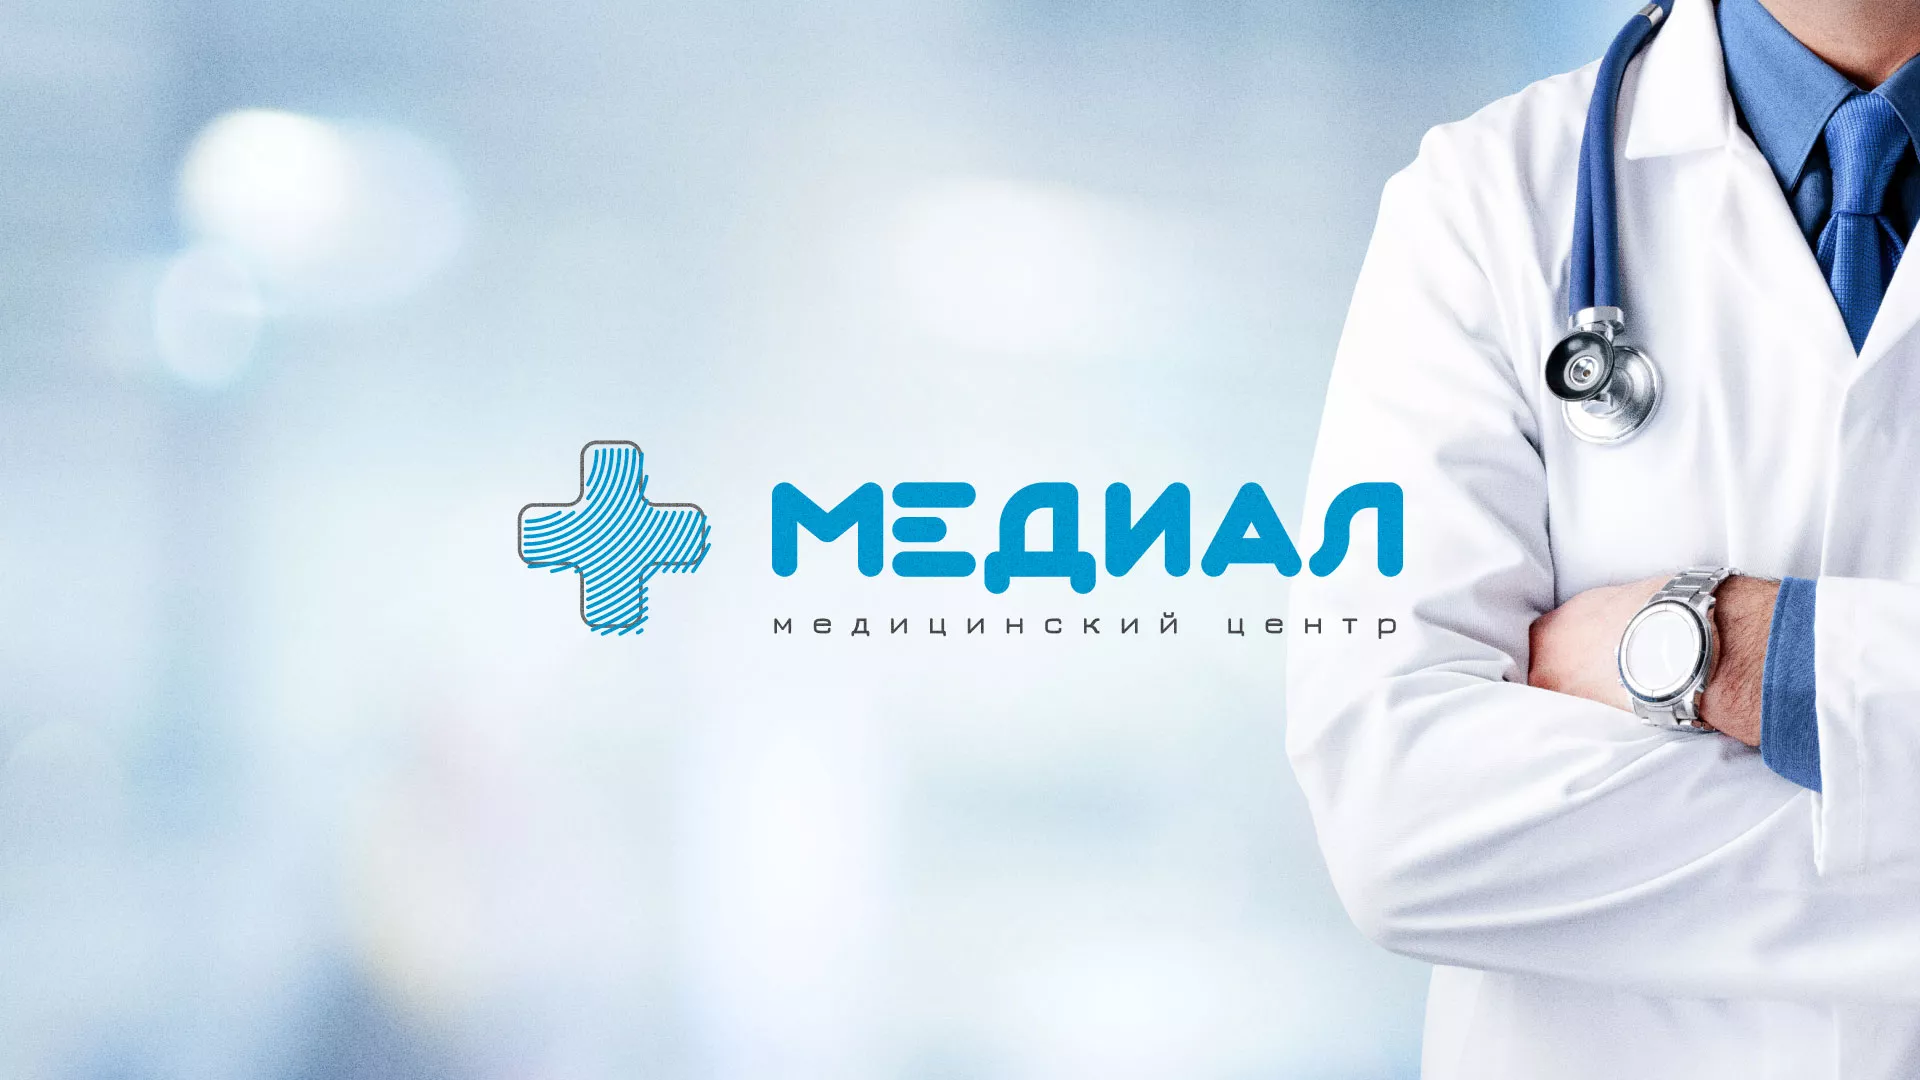 Создание сайта для медицинского центра «Медиал» в Николаевске-на-Амуре